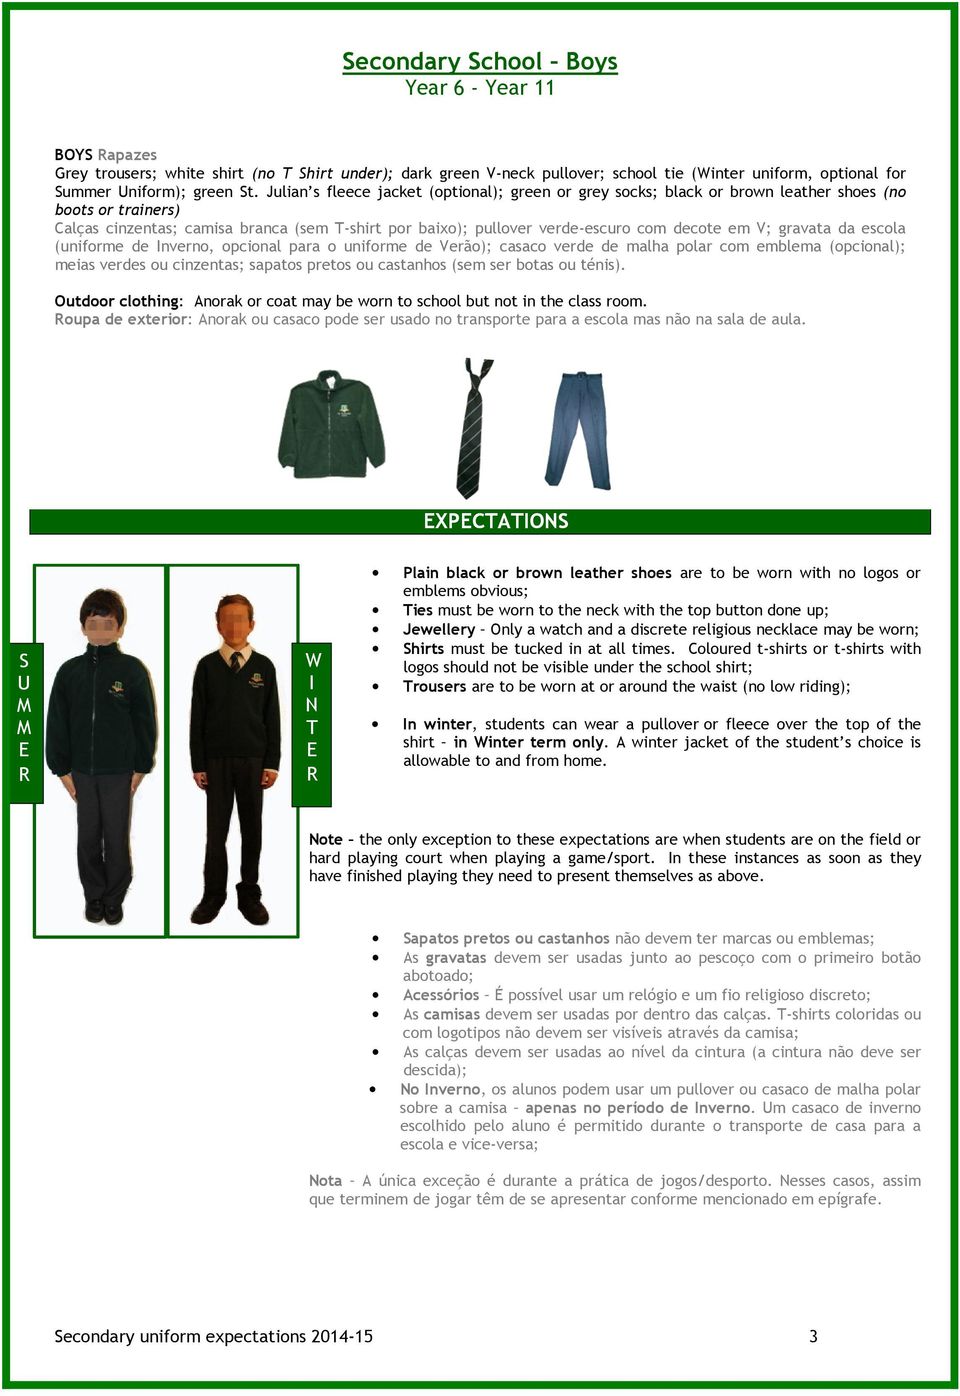 em V; gravata da escola (uniforme de Inverno, opcional para o uniforme de Verão); casaco verde de malha polar com emblema (opcional); meias verdes ou cinzentas; sapatos pretos ou castanhos (sem ser